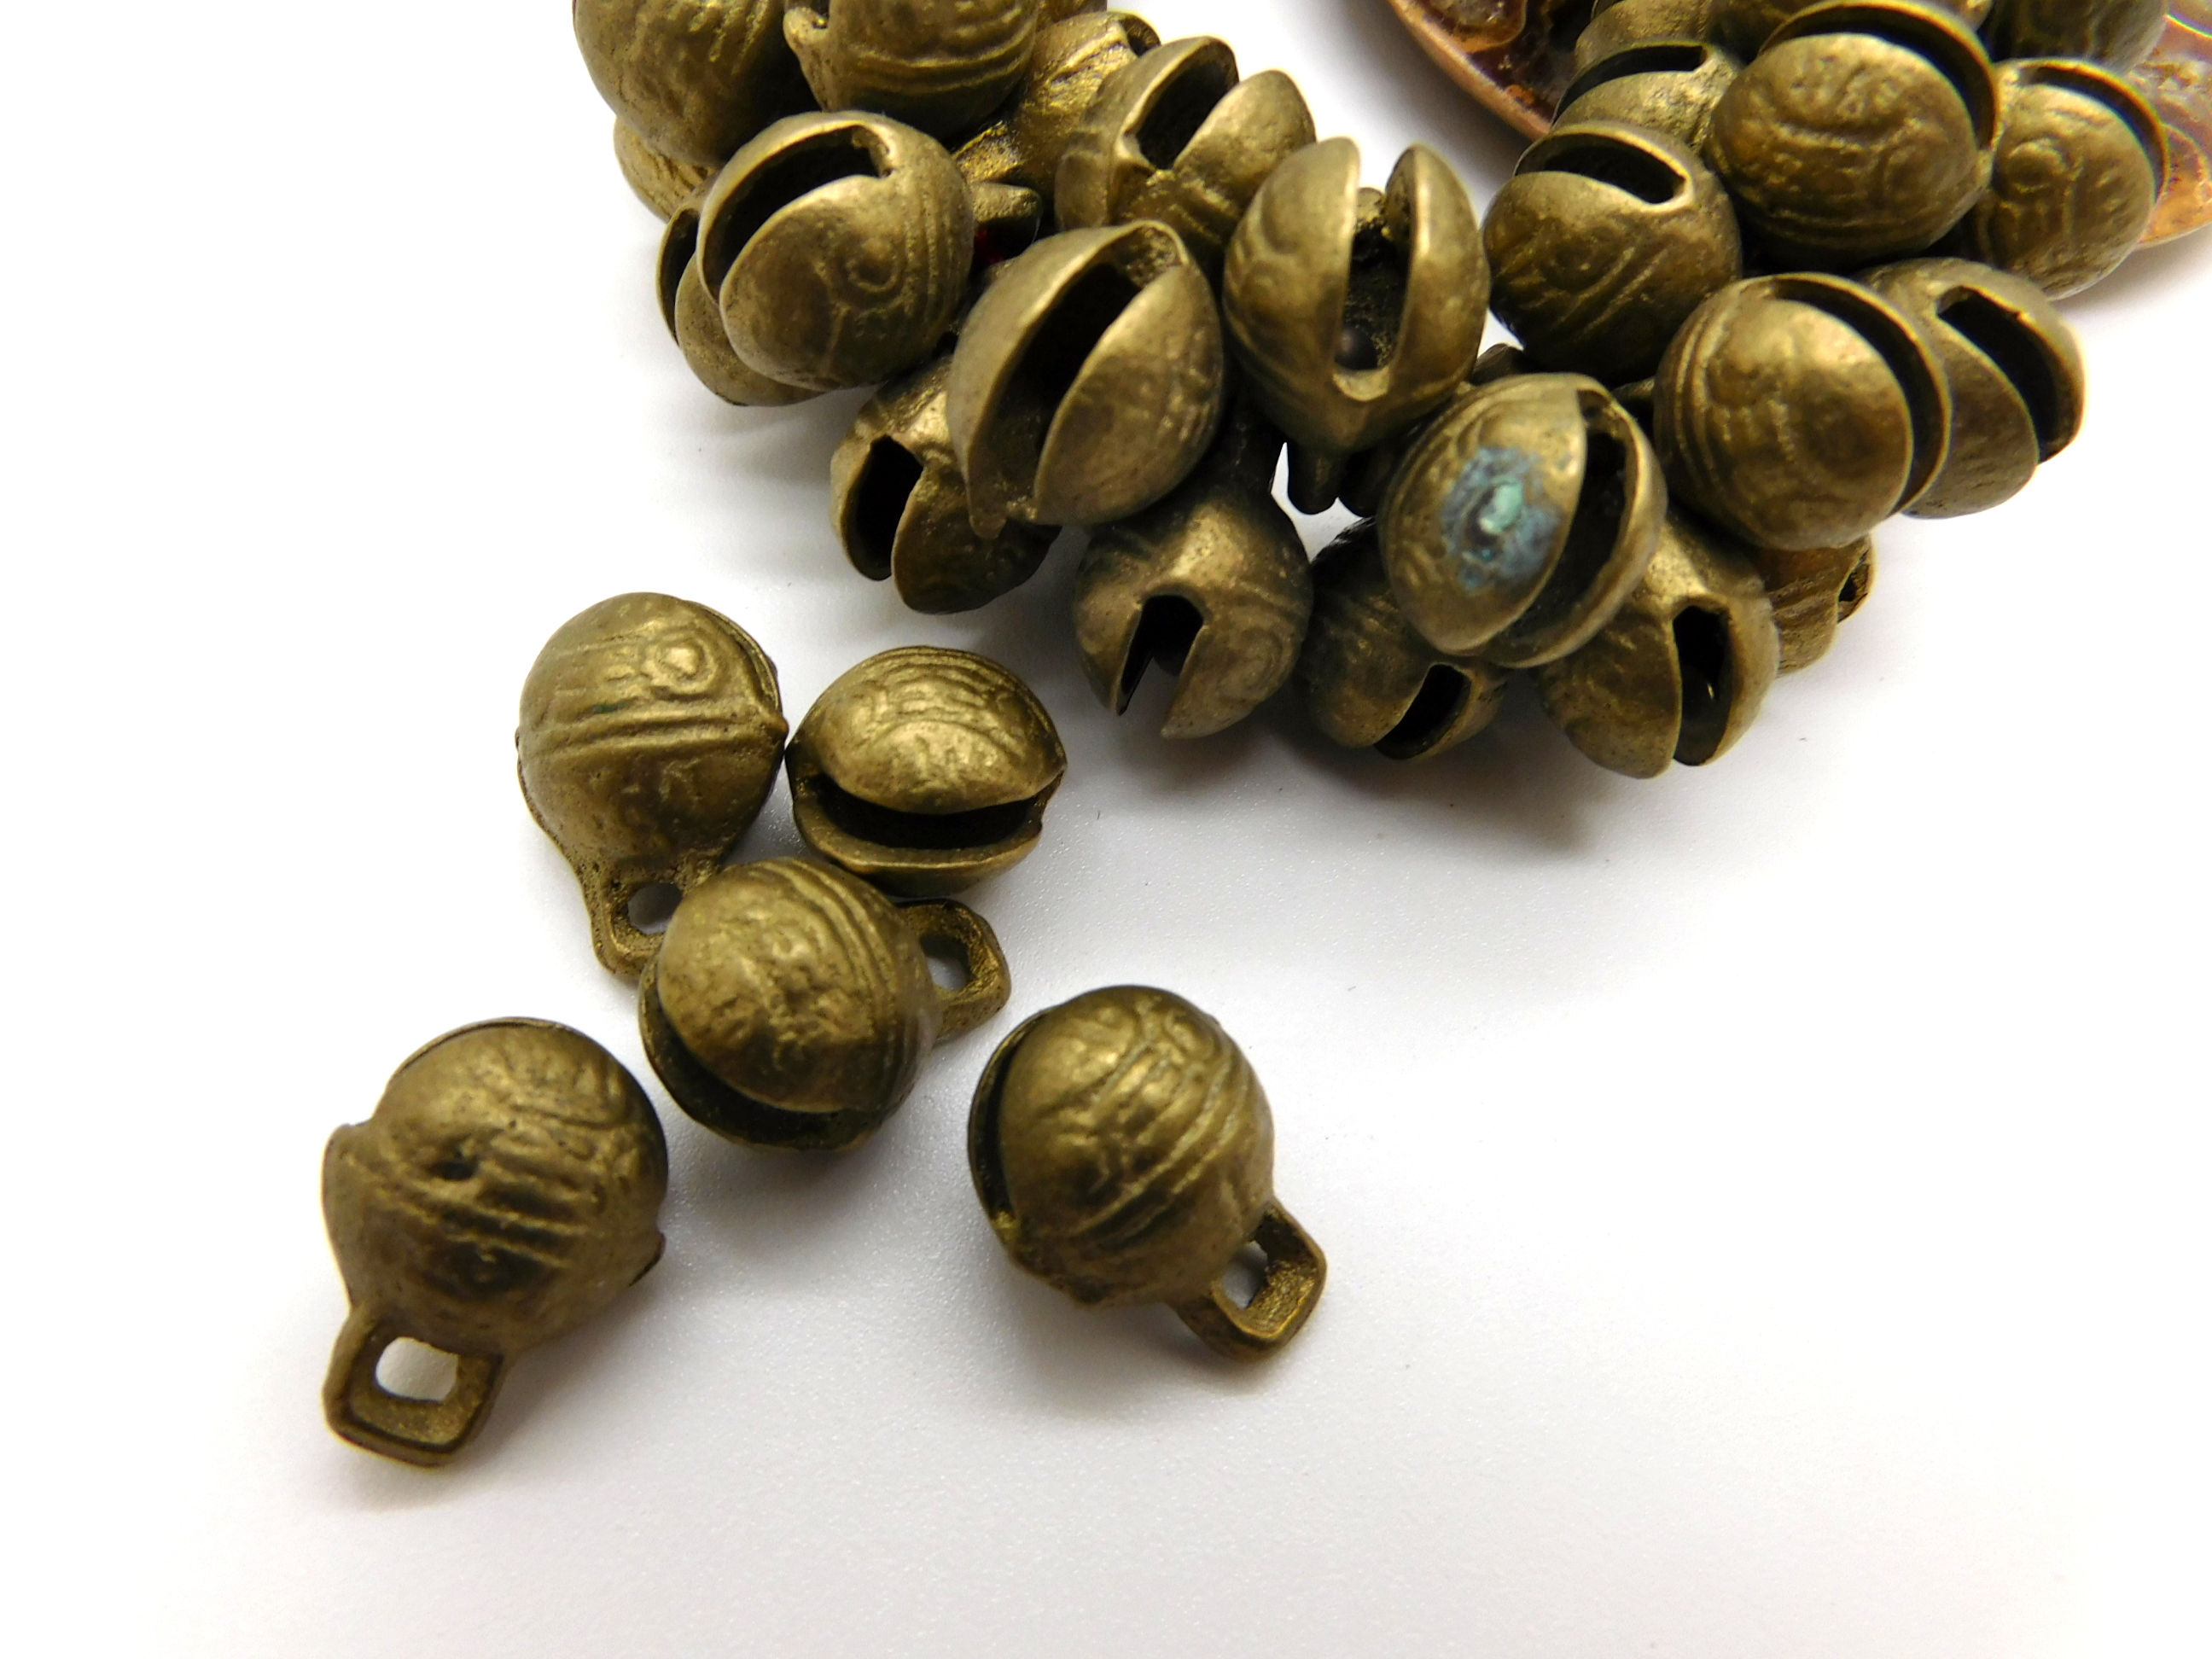 handmade brass bells/jingles from Ghana Africa - 5 pcs